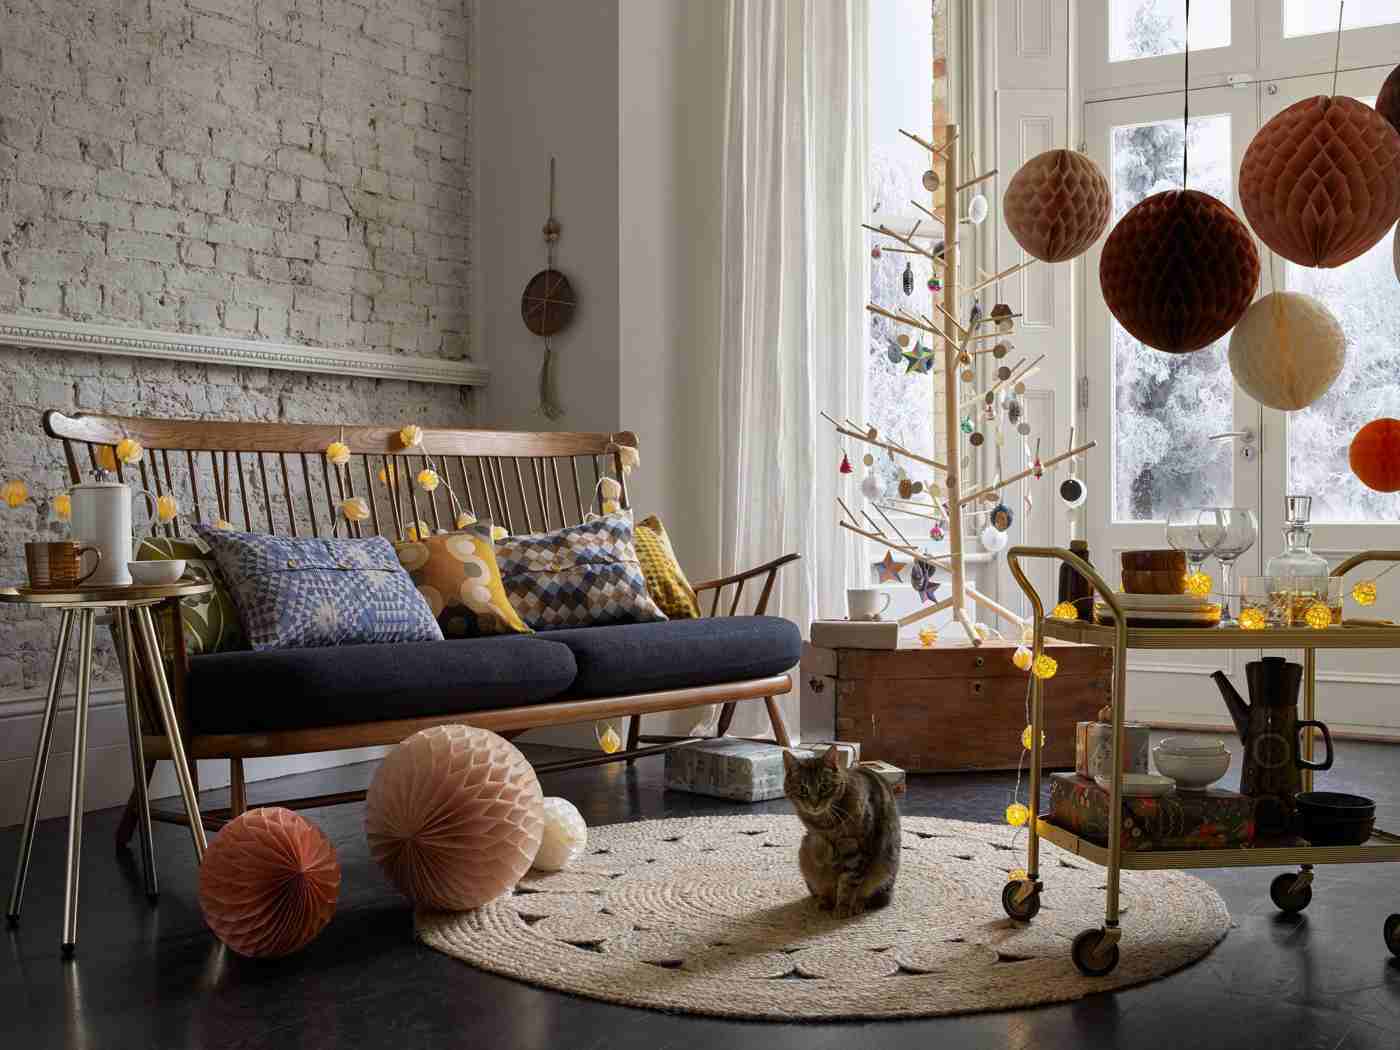 Weihnachtsbaum aus Holz festlich dekorieren Ideen im skandinavischen Stil